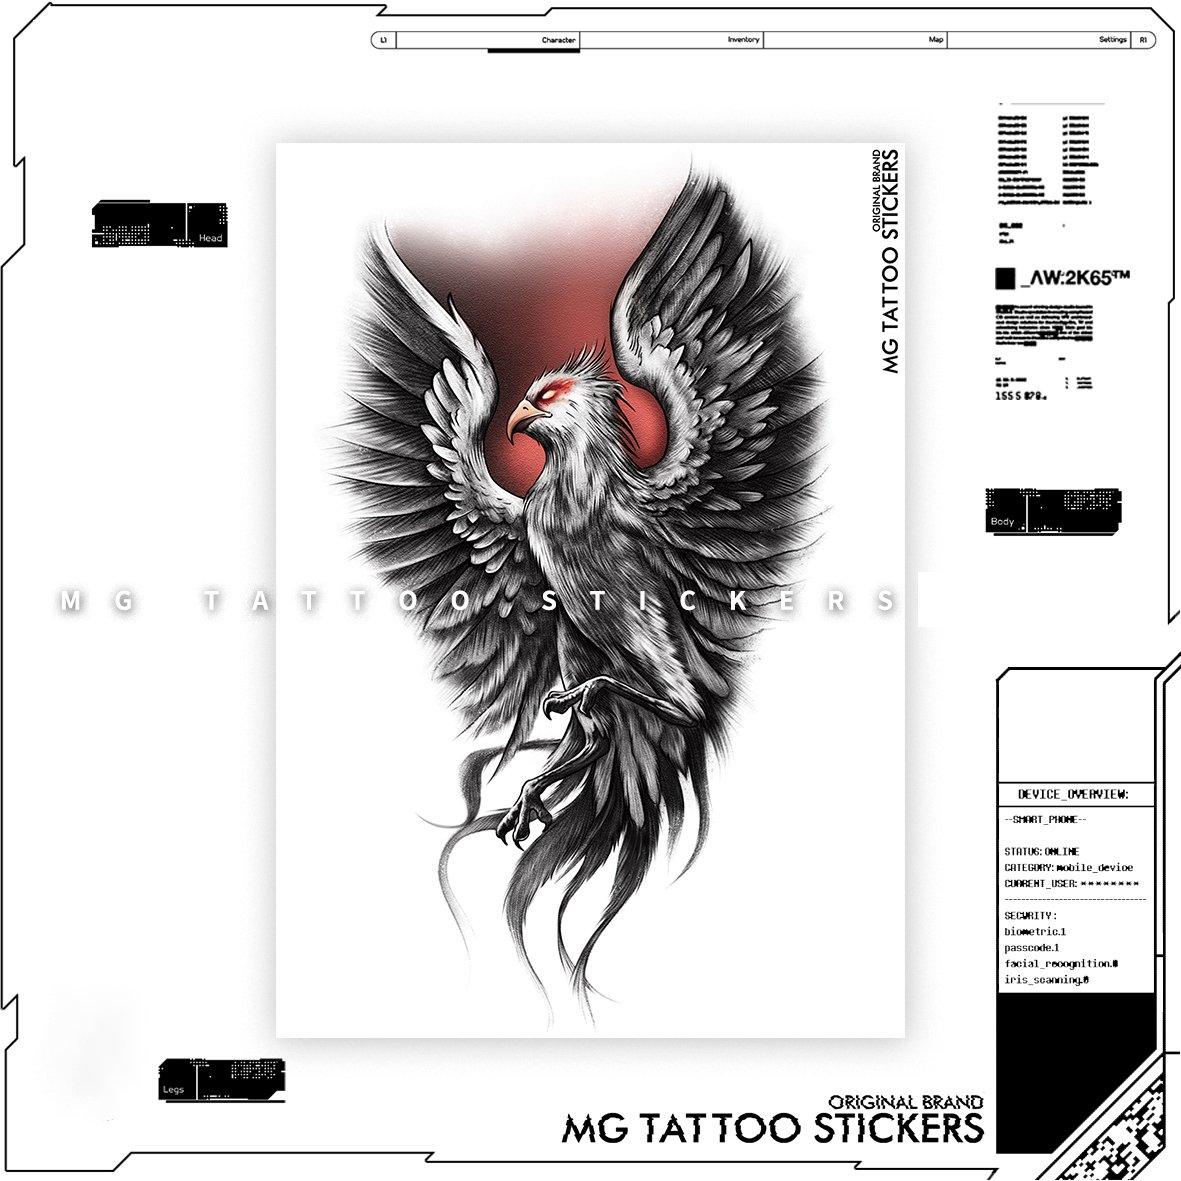 Eagle Temporary Tattoo - StiCool